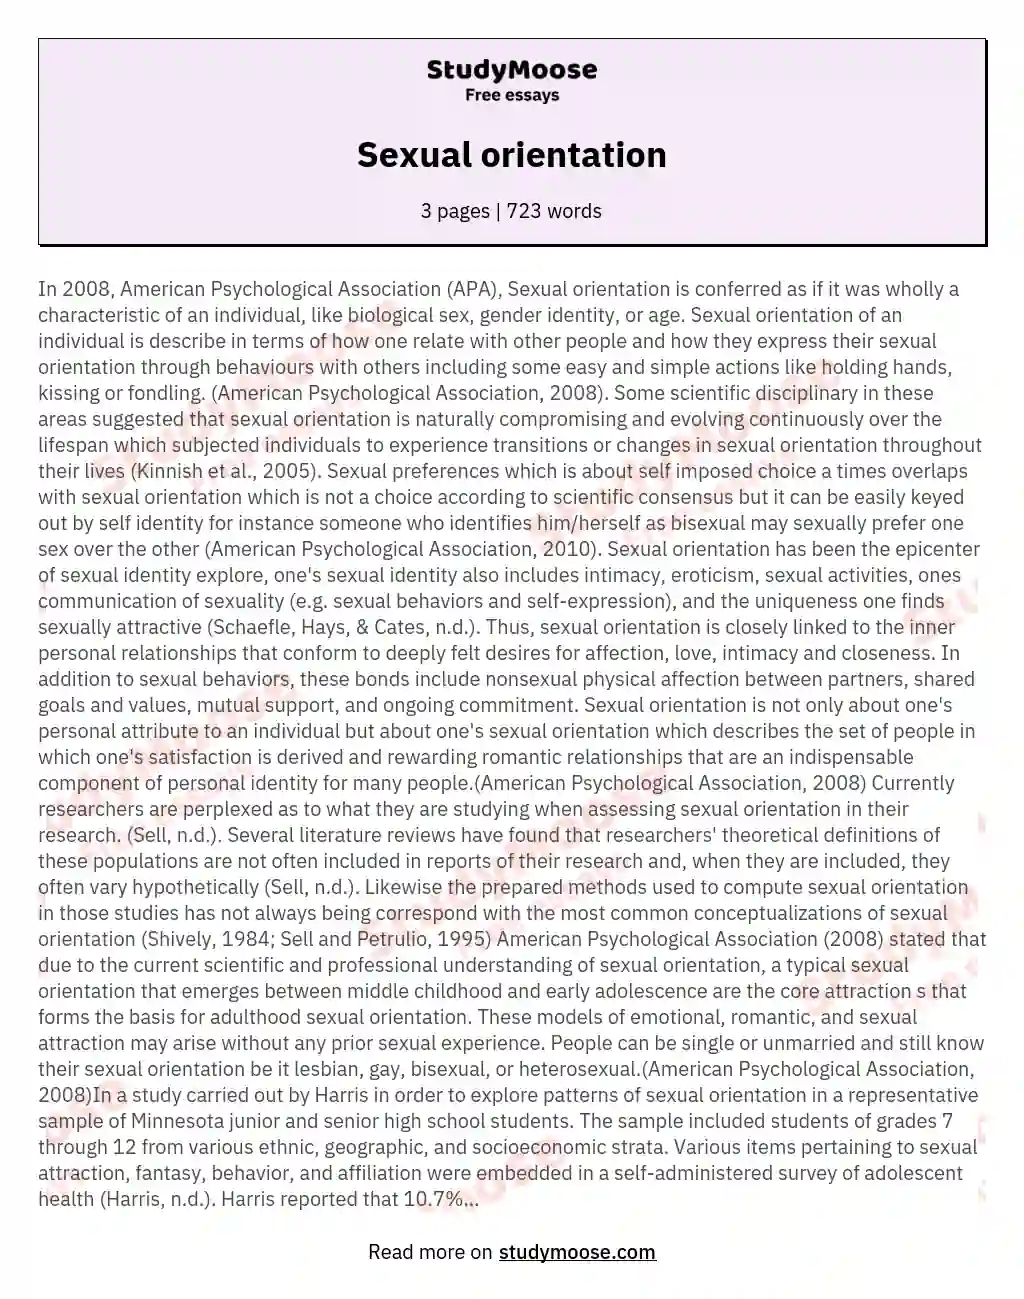 Sexual orientation essay